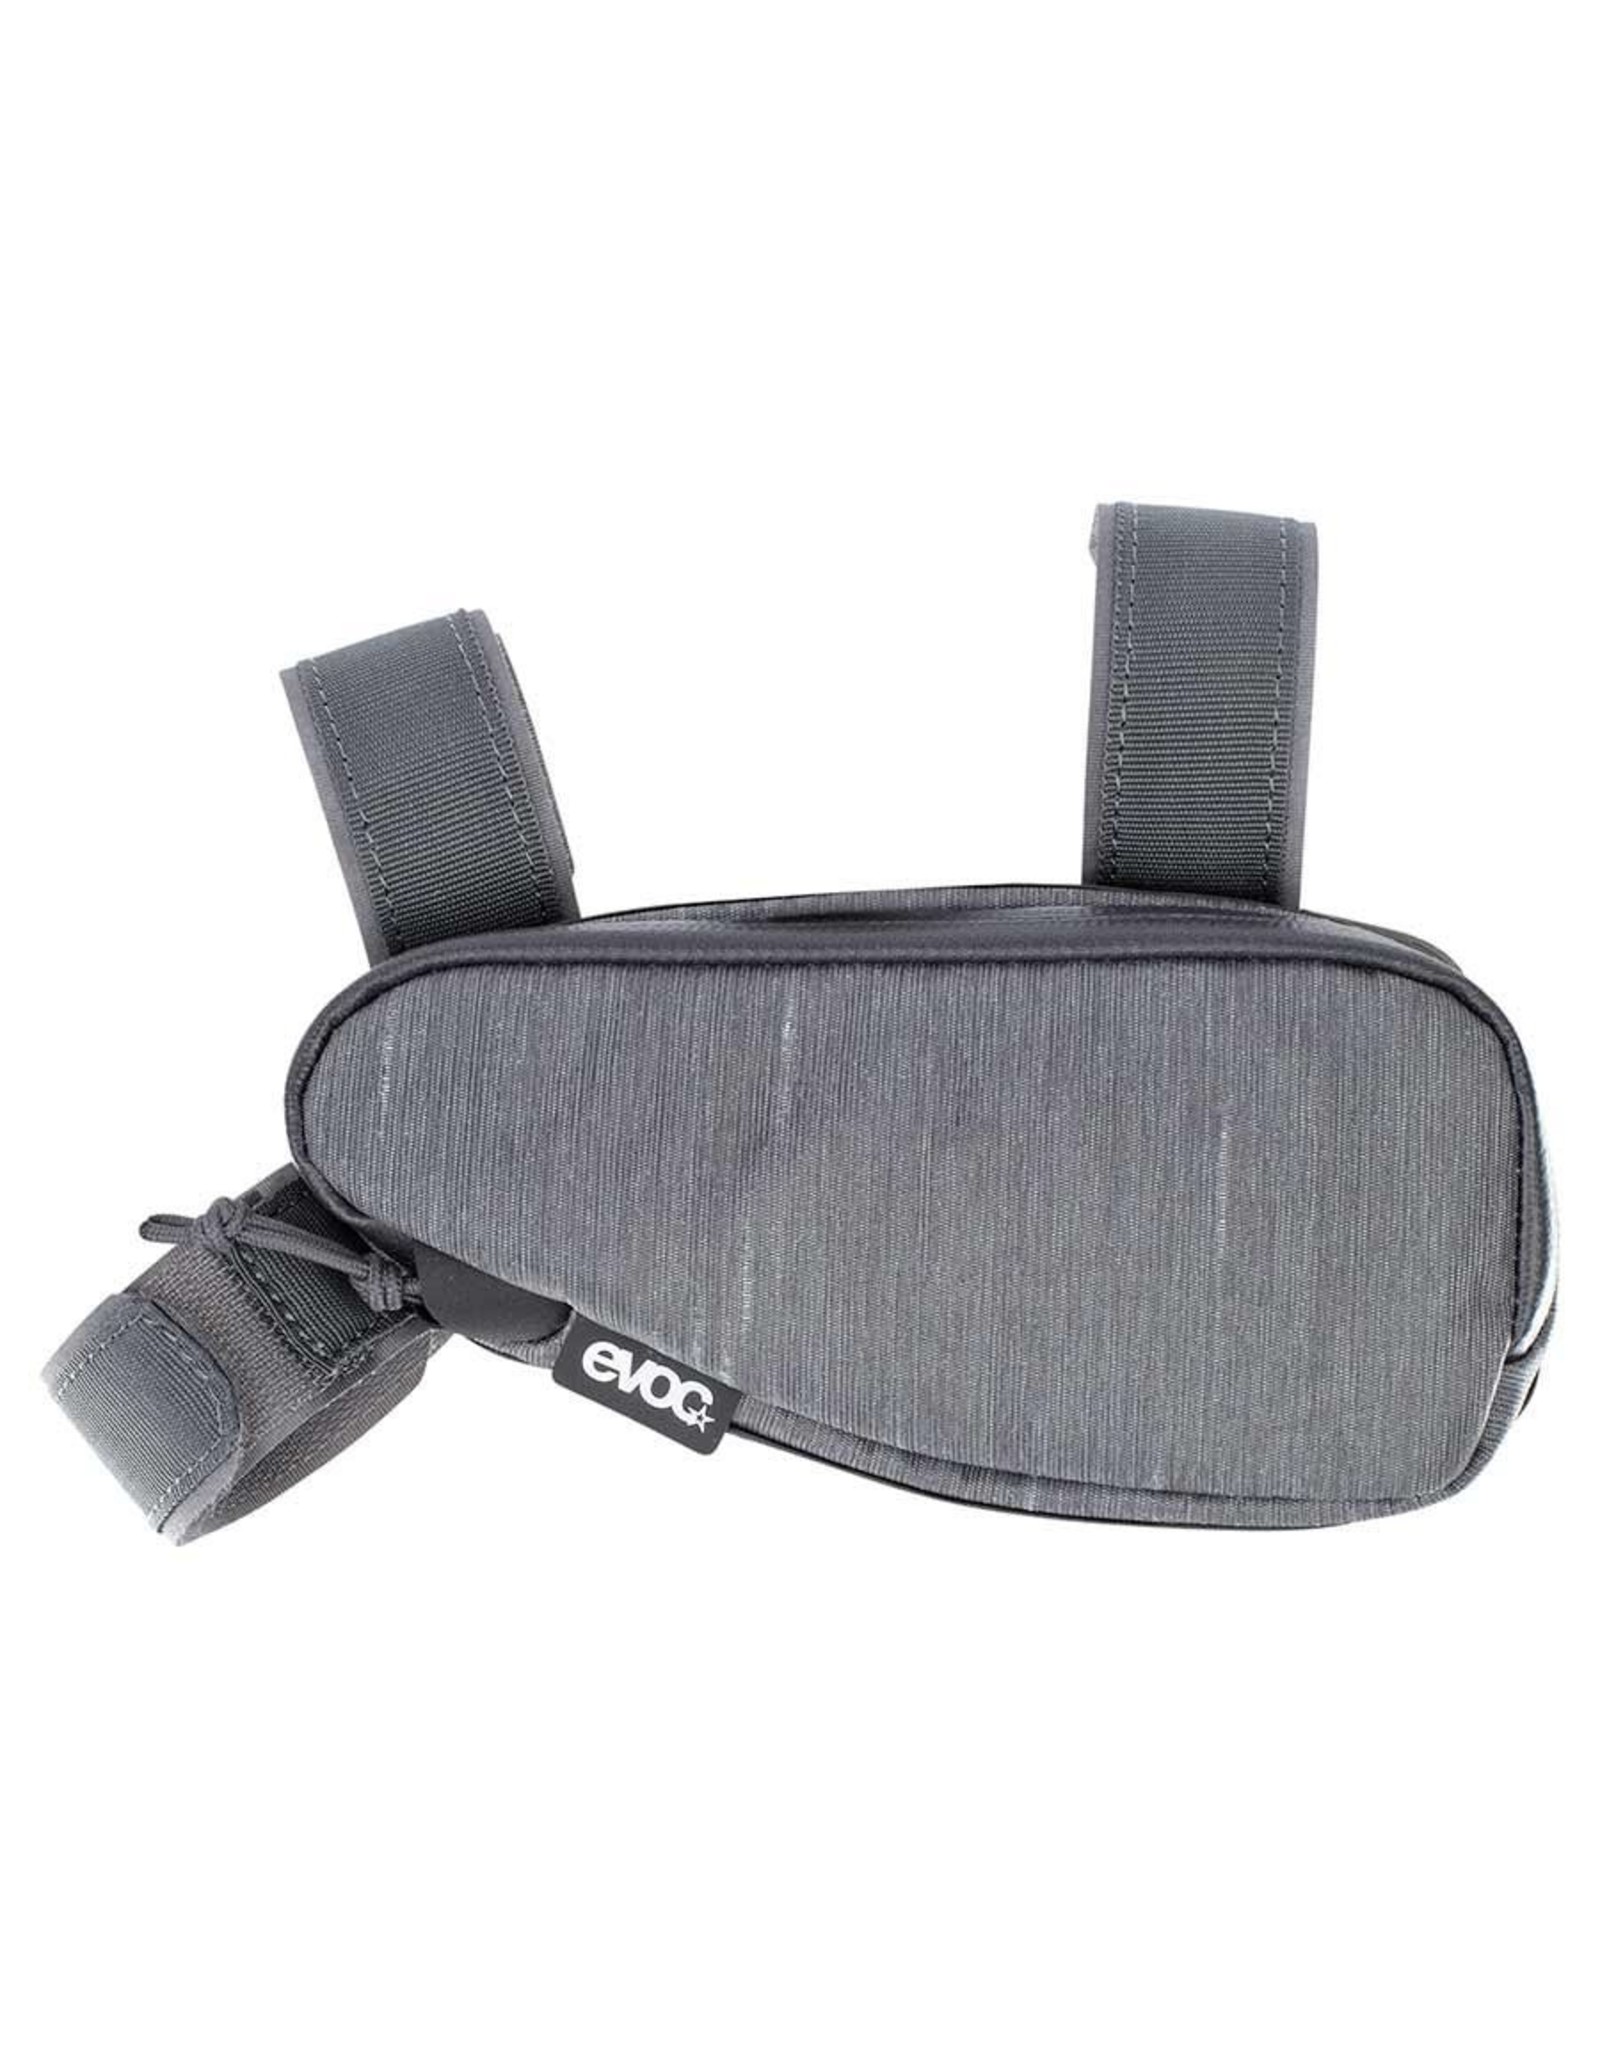 EVOC EVOC, Multi Frame Bag S, 0.7L, Carbon Grey